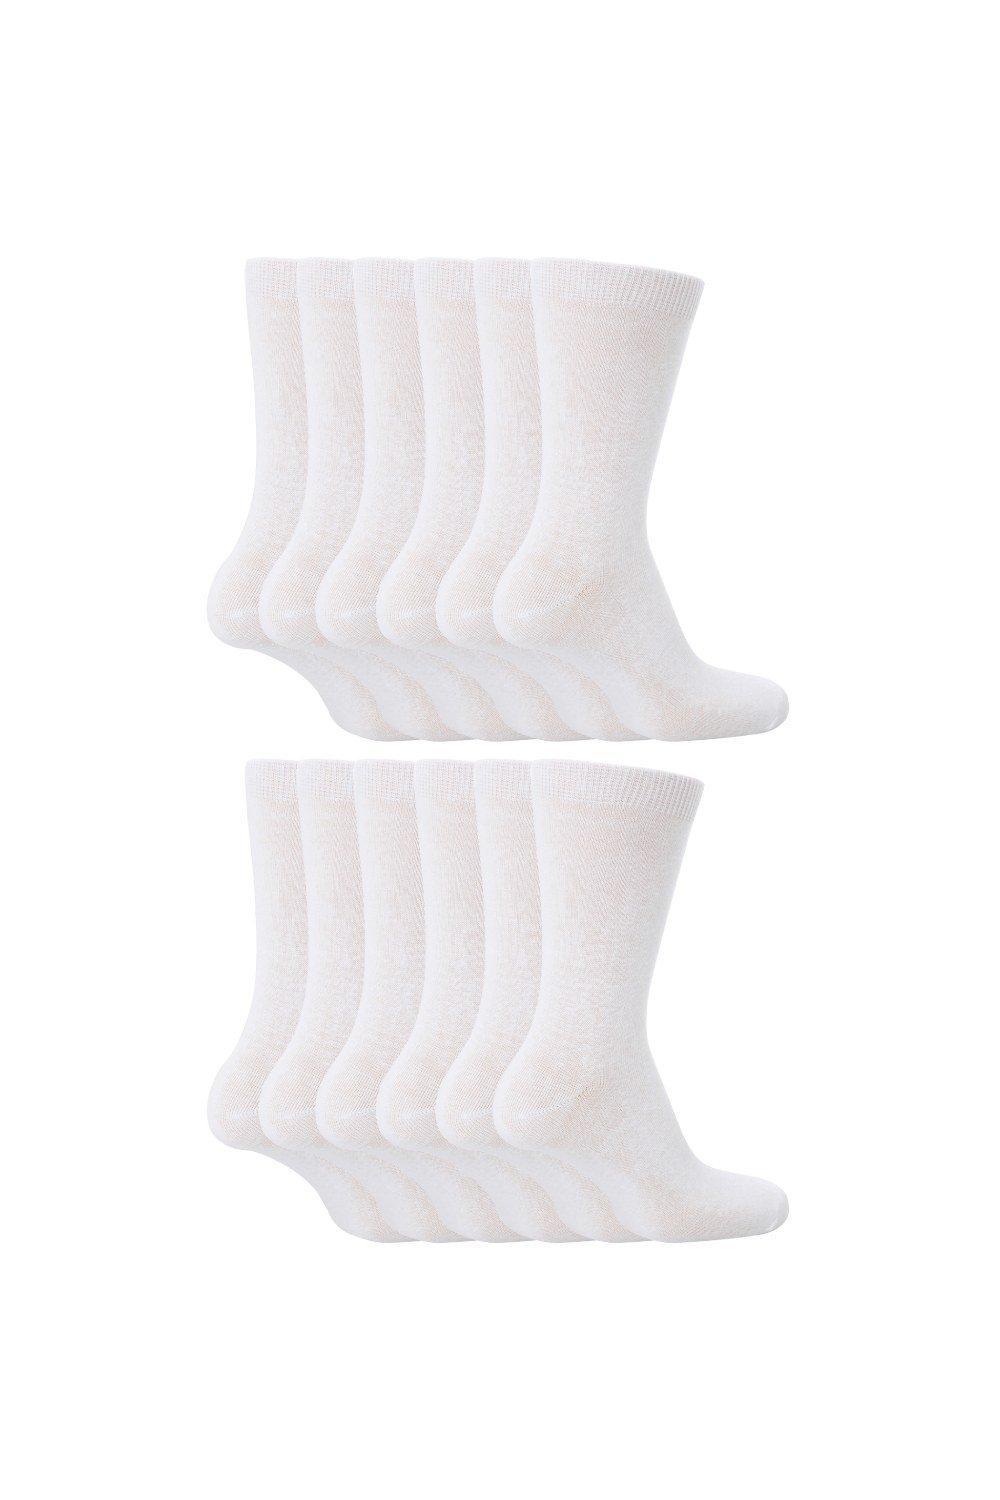 12 Pair Plain School Soft Breathable Cotton Rich Socks